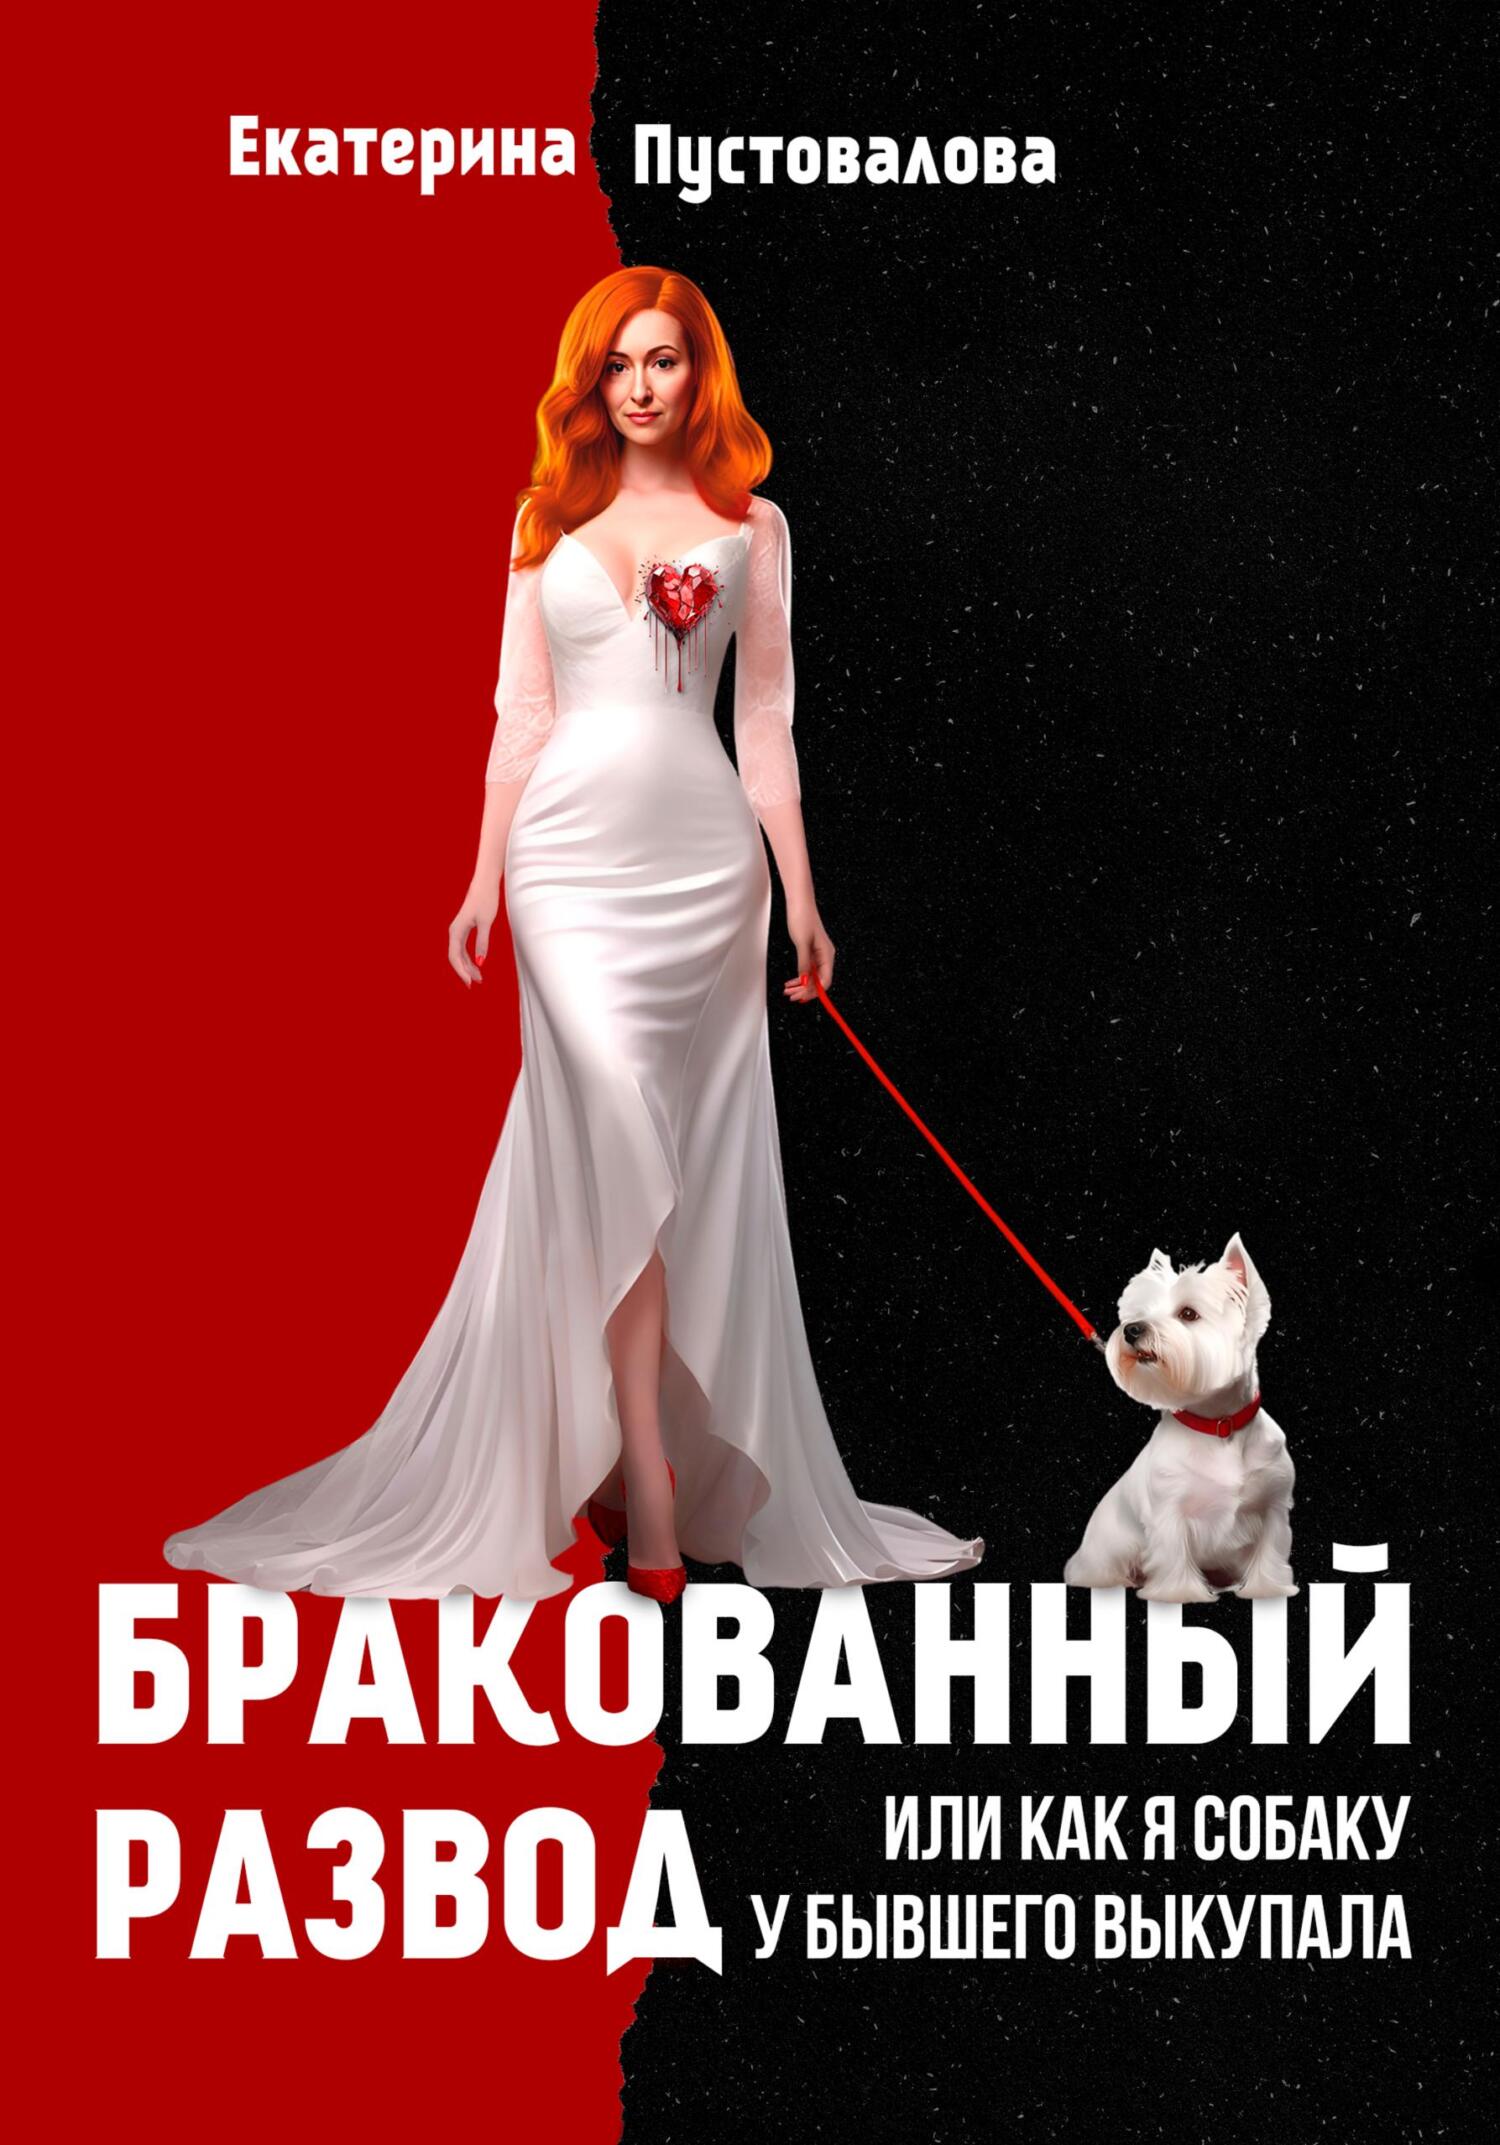 Бракованный развод, Екатерина Пустовалова – скачать книгу fb2, epub, pdf на  ЛитРес